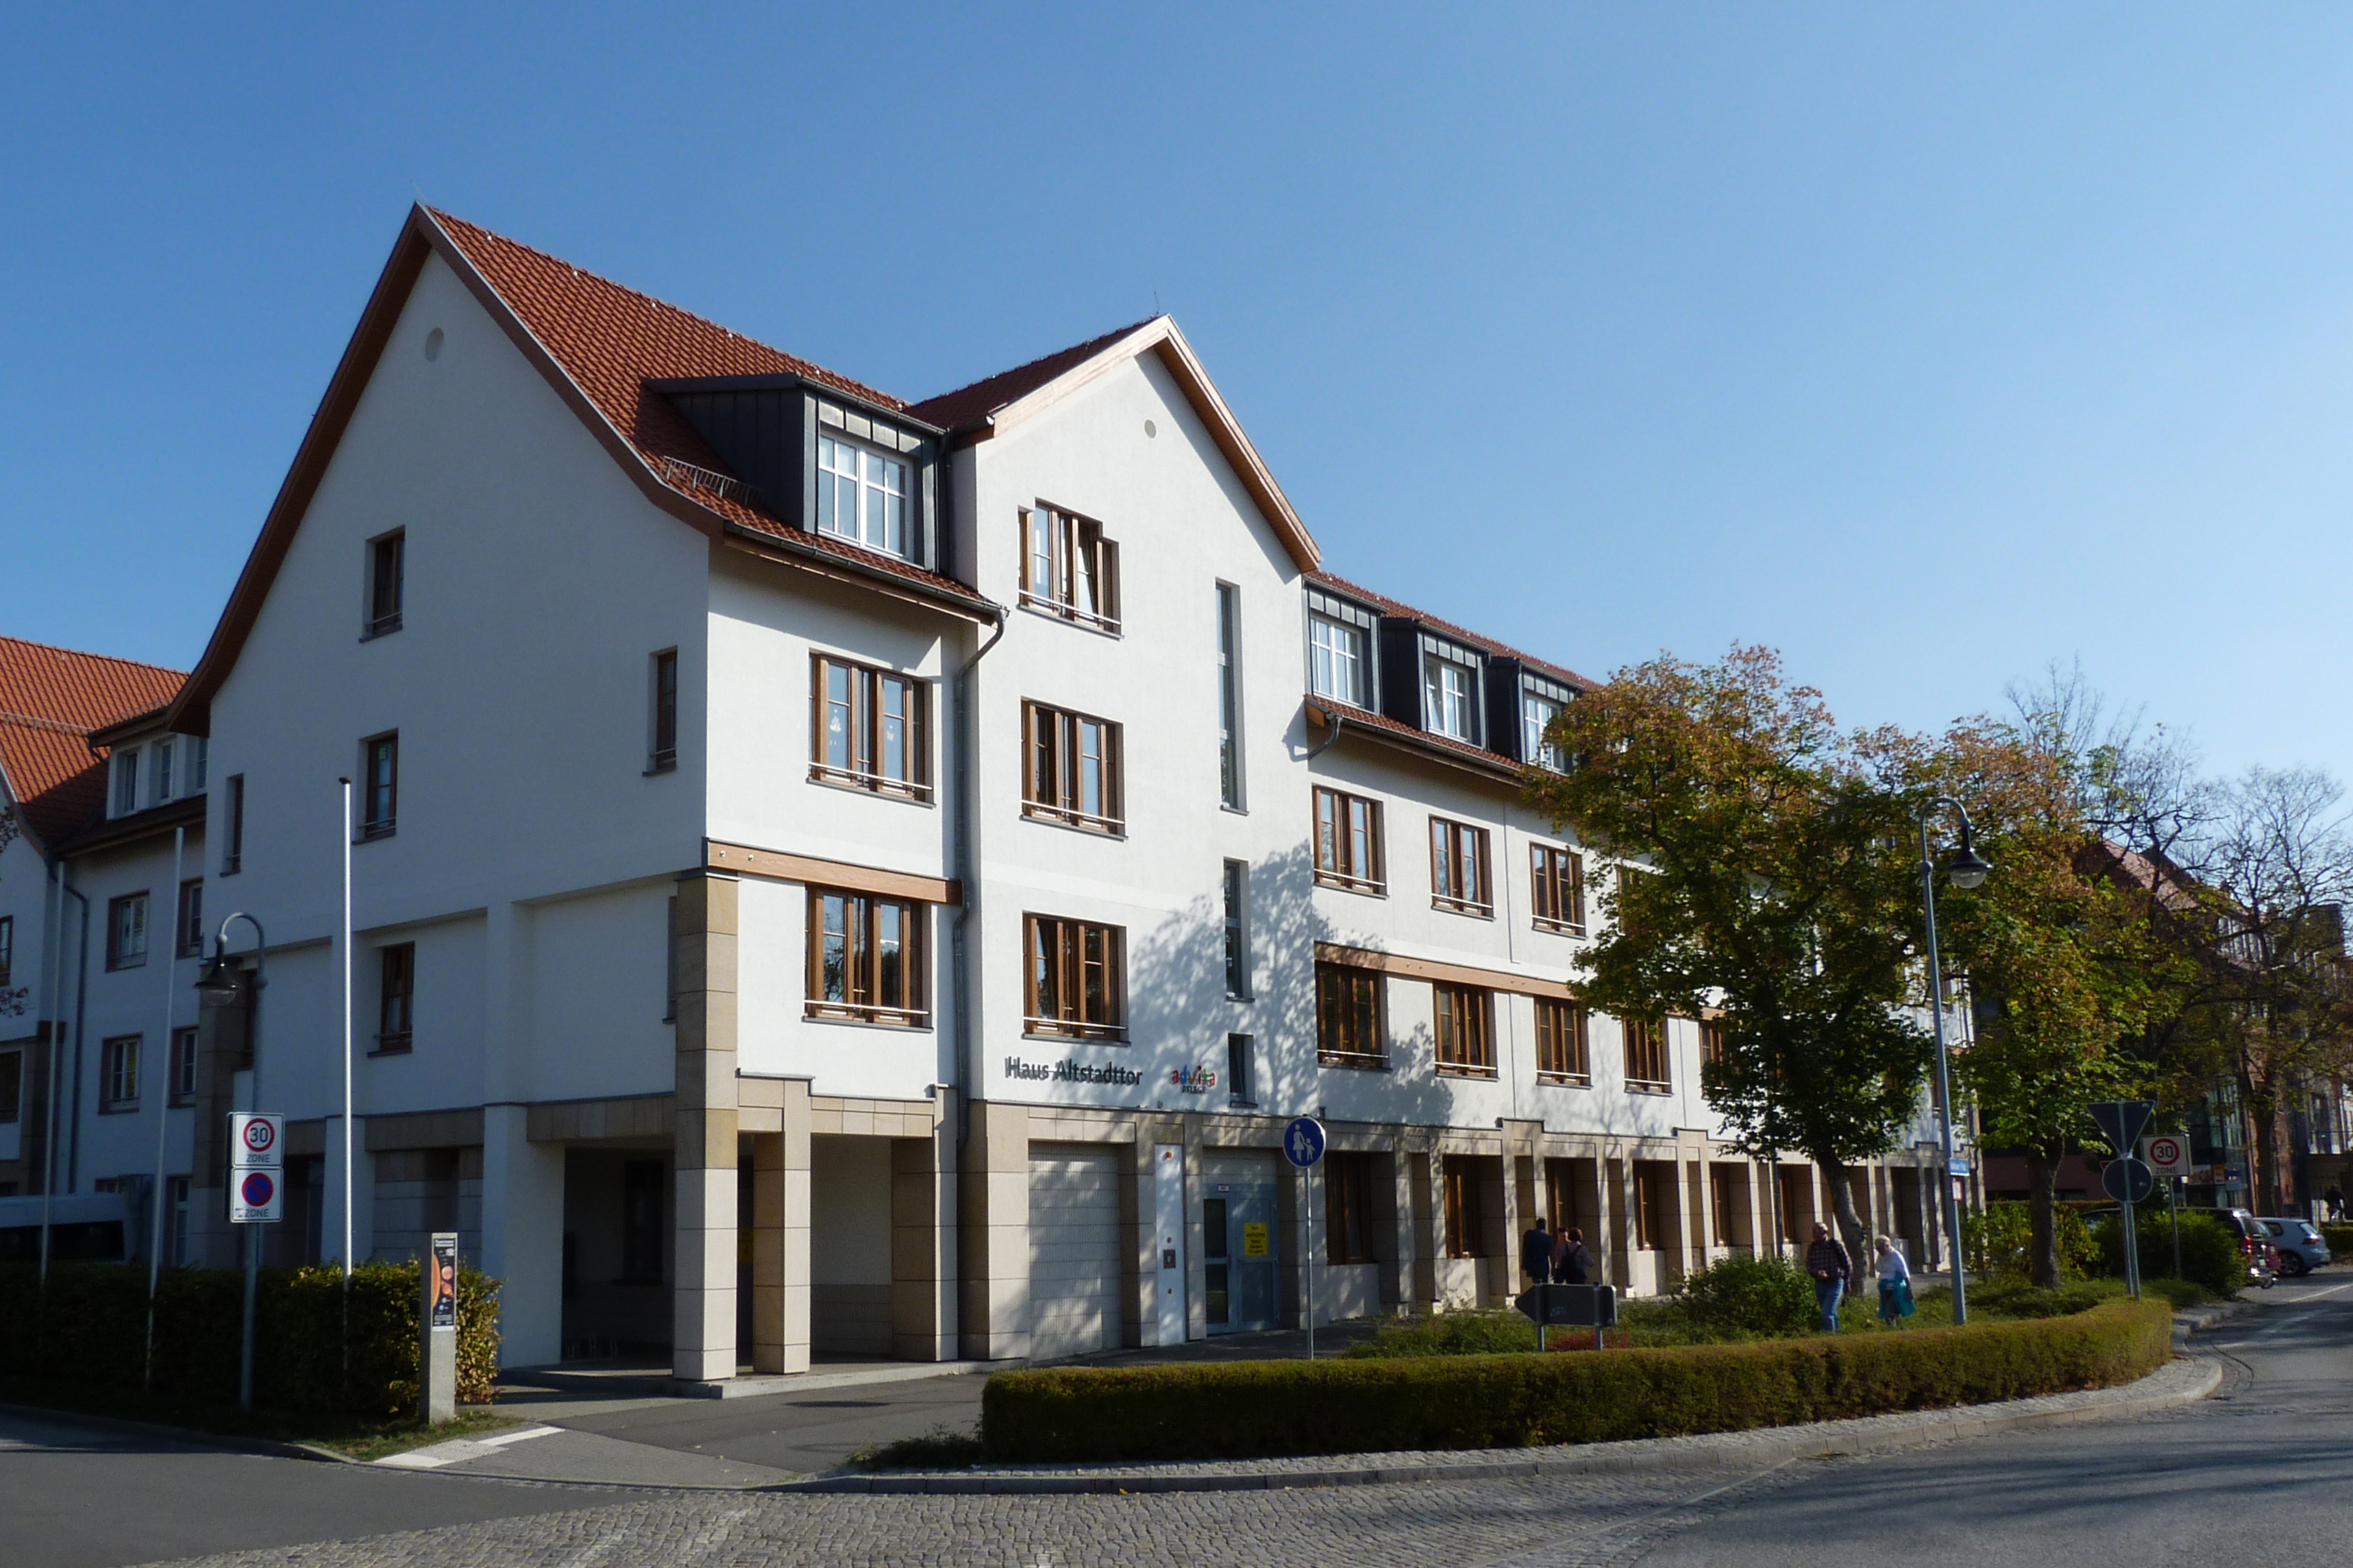 advita Haus Altstadttor | Pflegedienst in Wernigerode | Betreutes Wohnen | Pflege-WG | Tagespflege